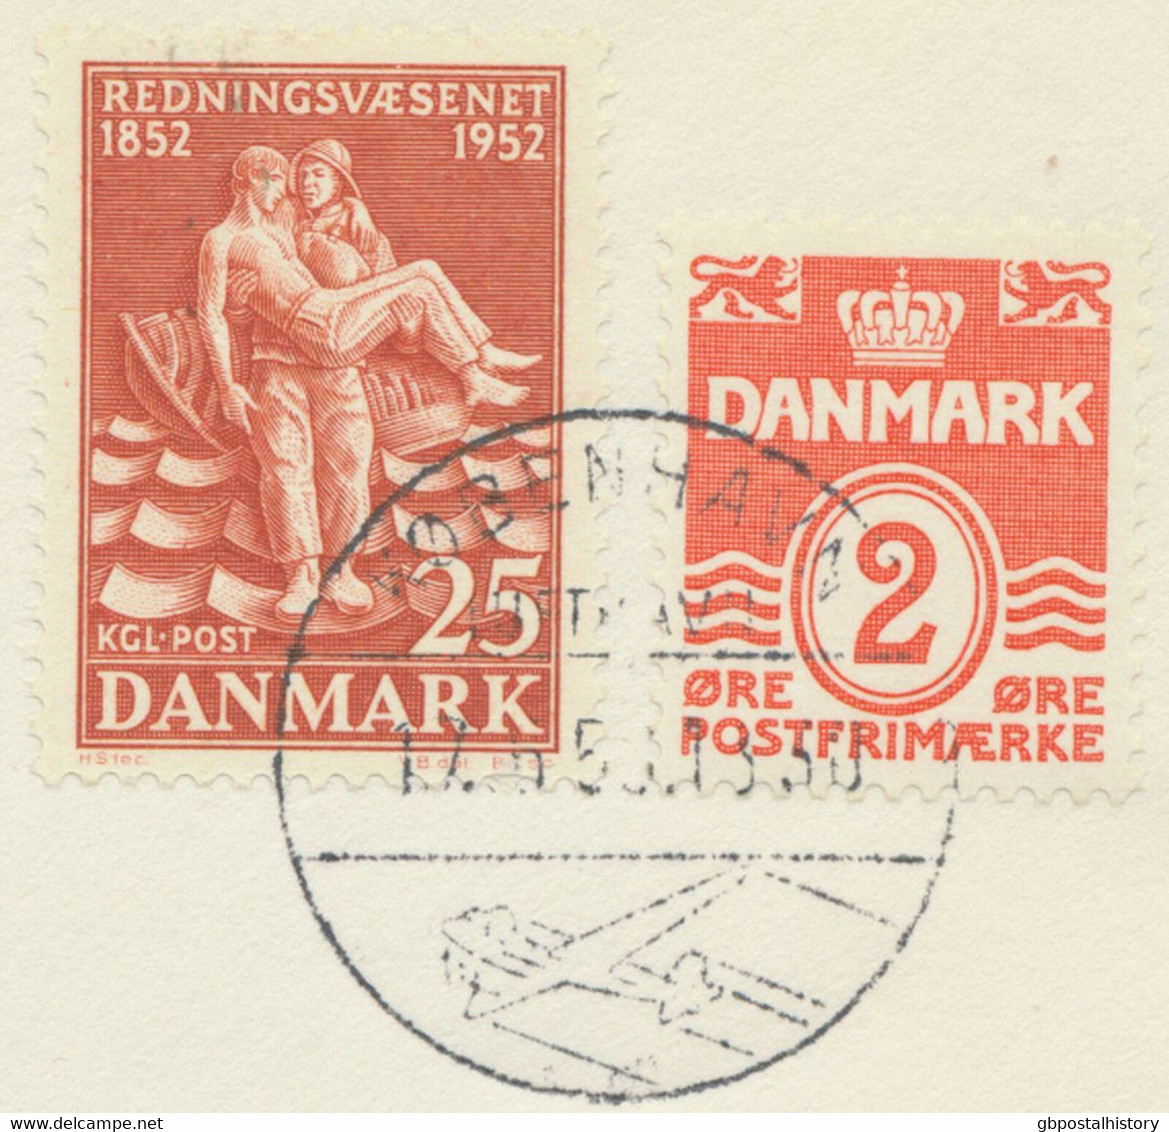 DENMARK 1959 First Flight SAS First Caravelle Jet Flight COPENHAGEN - DÜSSELDORF - Aéreo